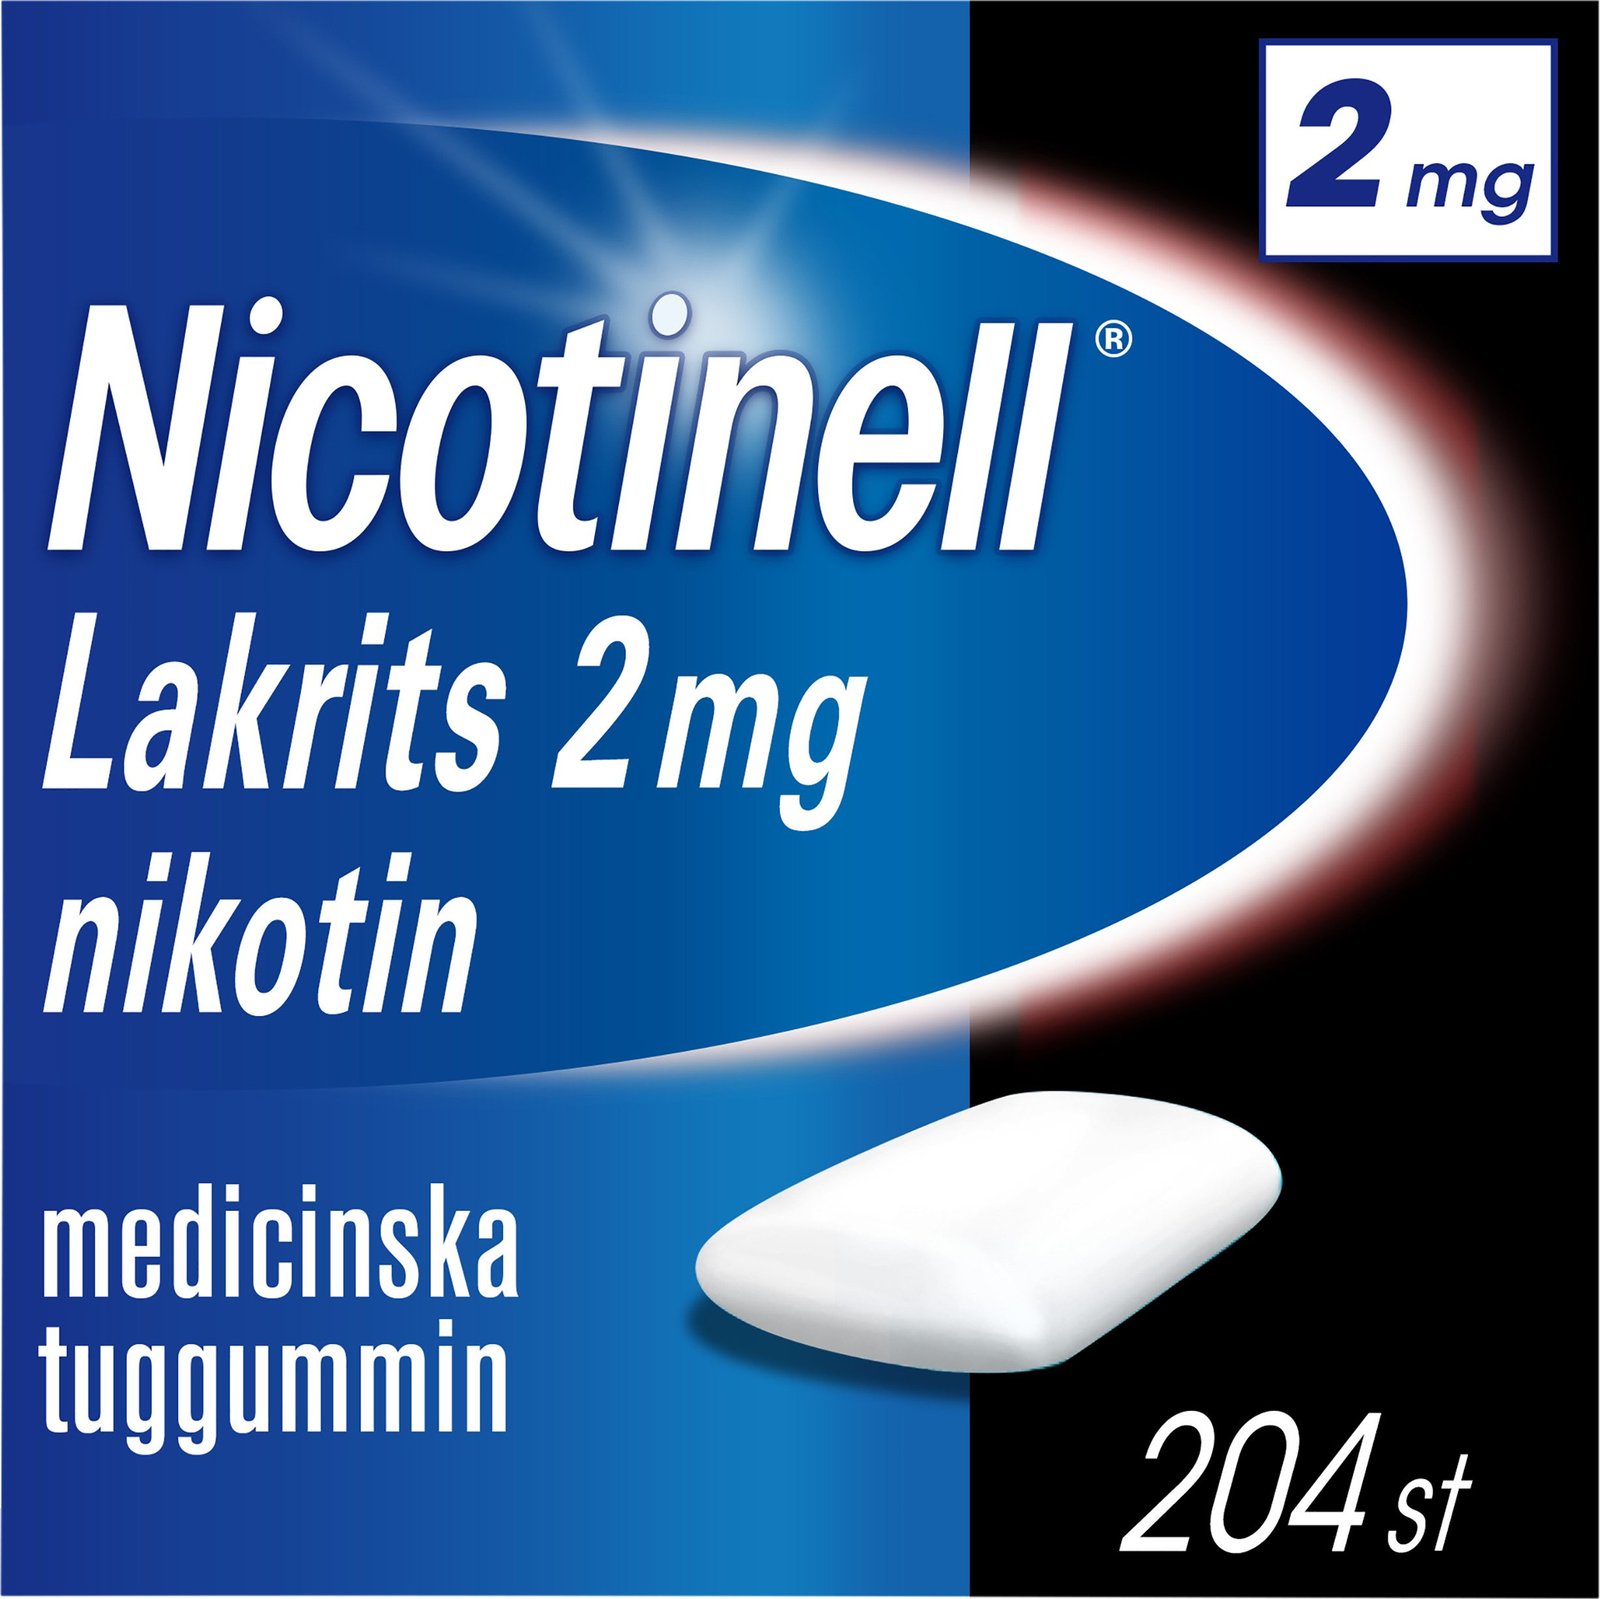 Nicotinell Lakrits 2mg Nikotin Medicinska tuggummin 204 st